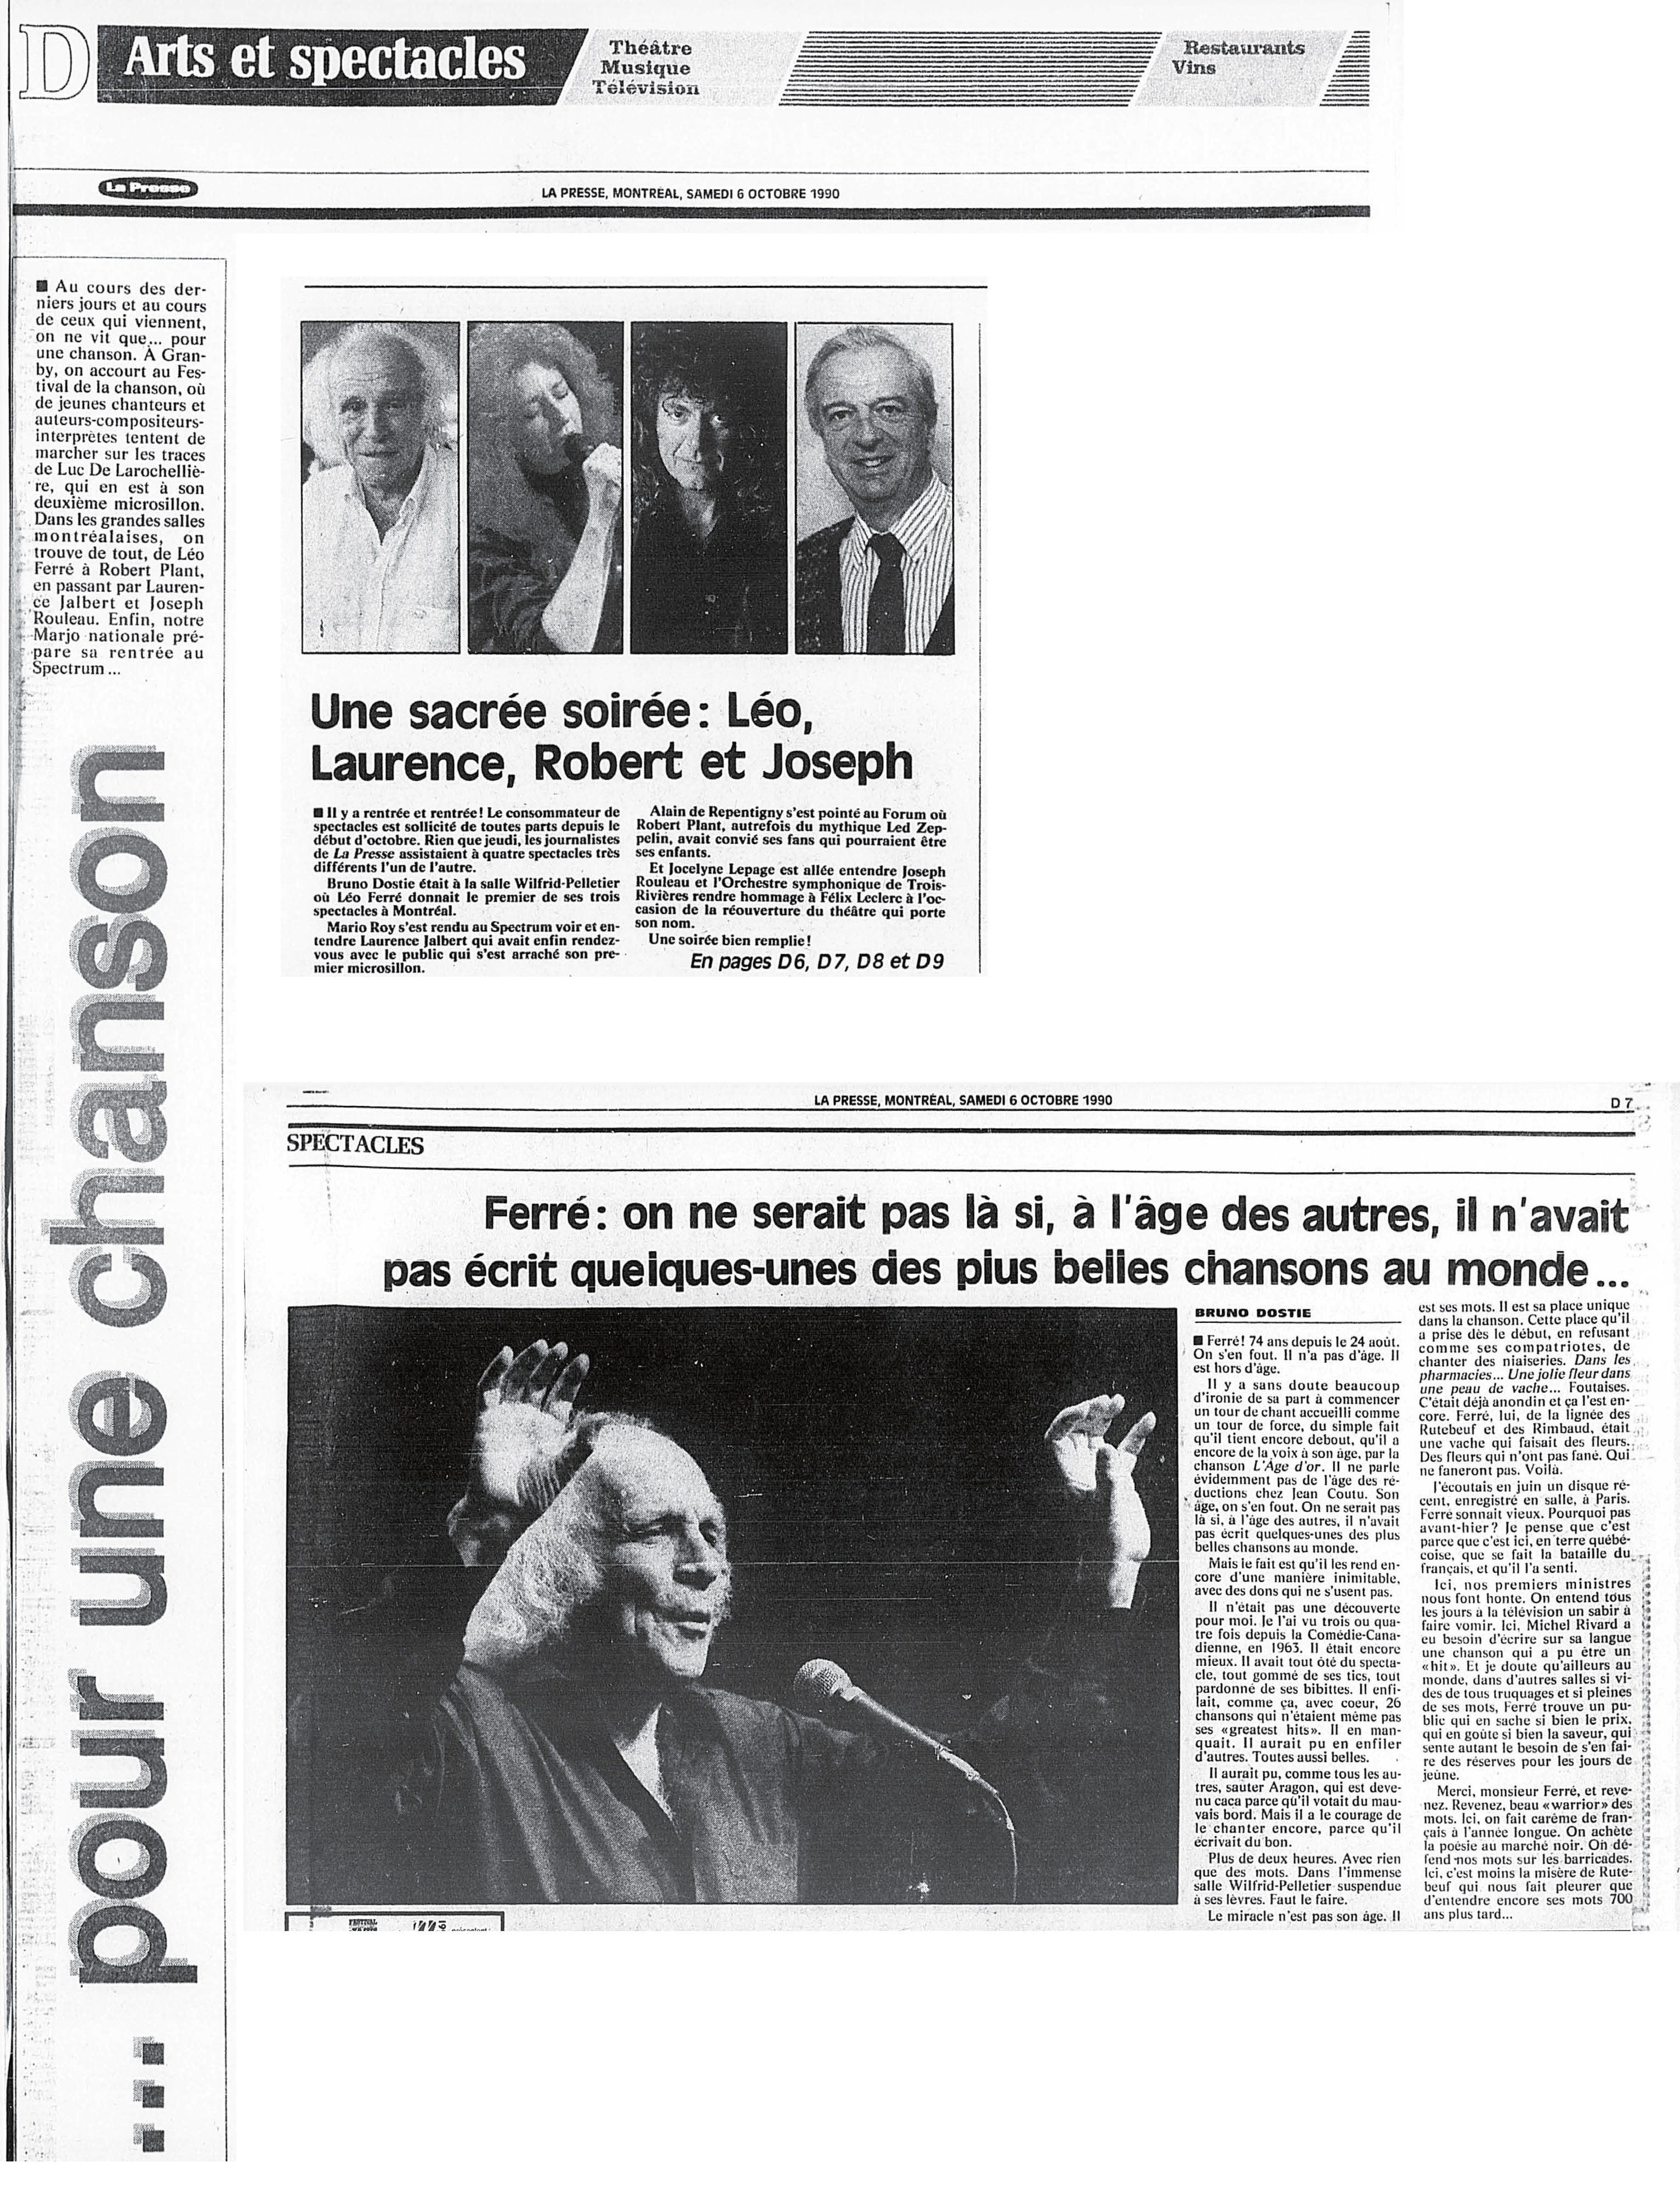 Léo Ferré - La Presse, 6 octobre 1990, D. Arts et spectacles